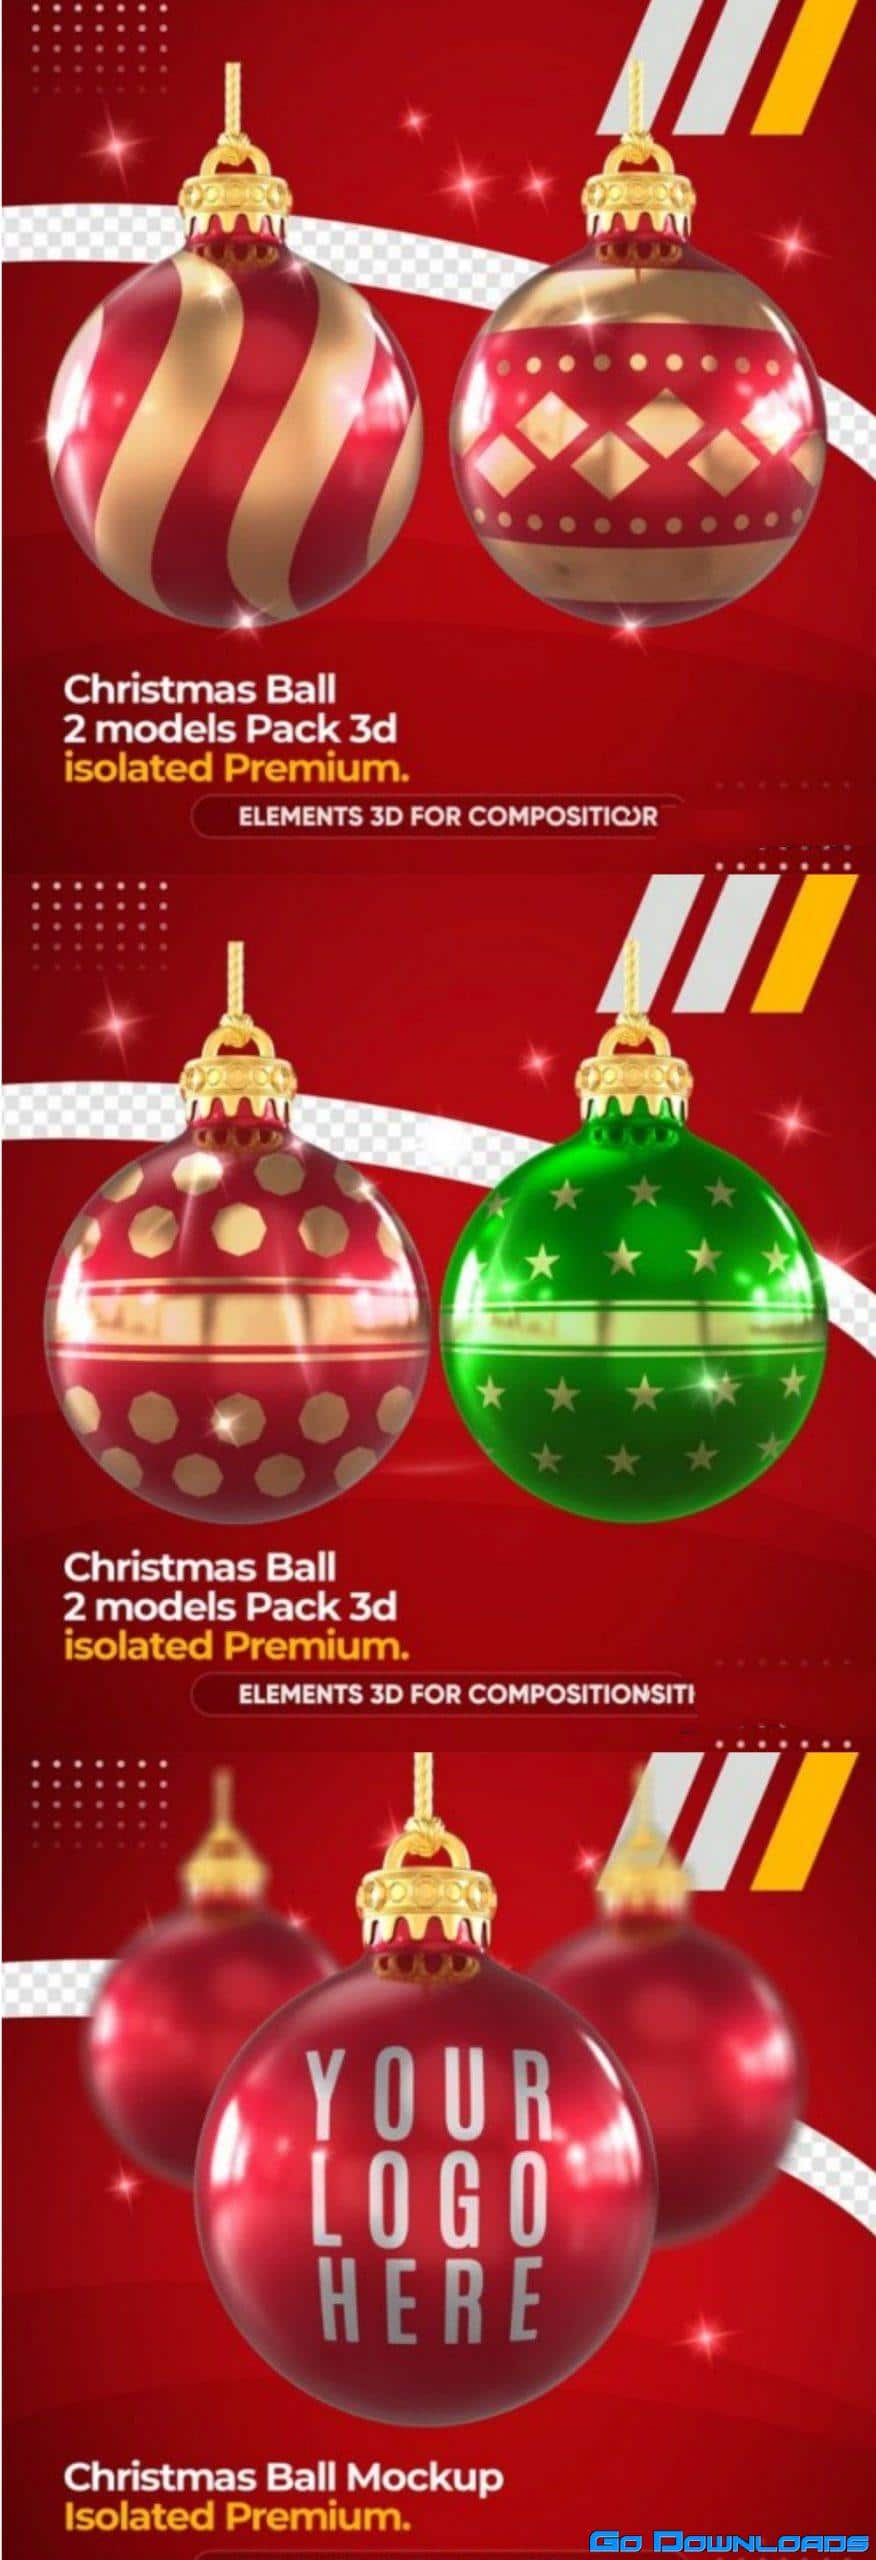 Christmas ball mockup Free Download